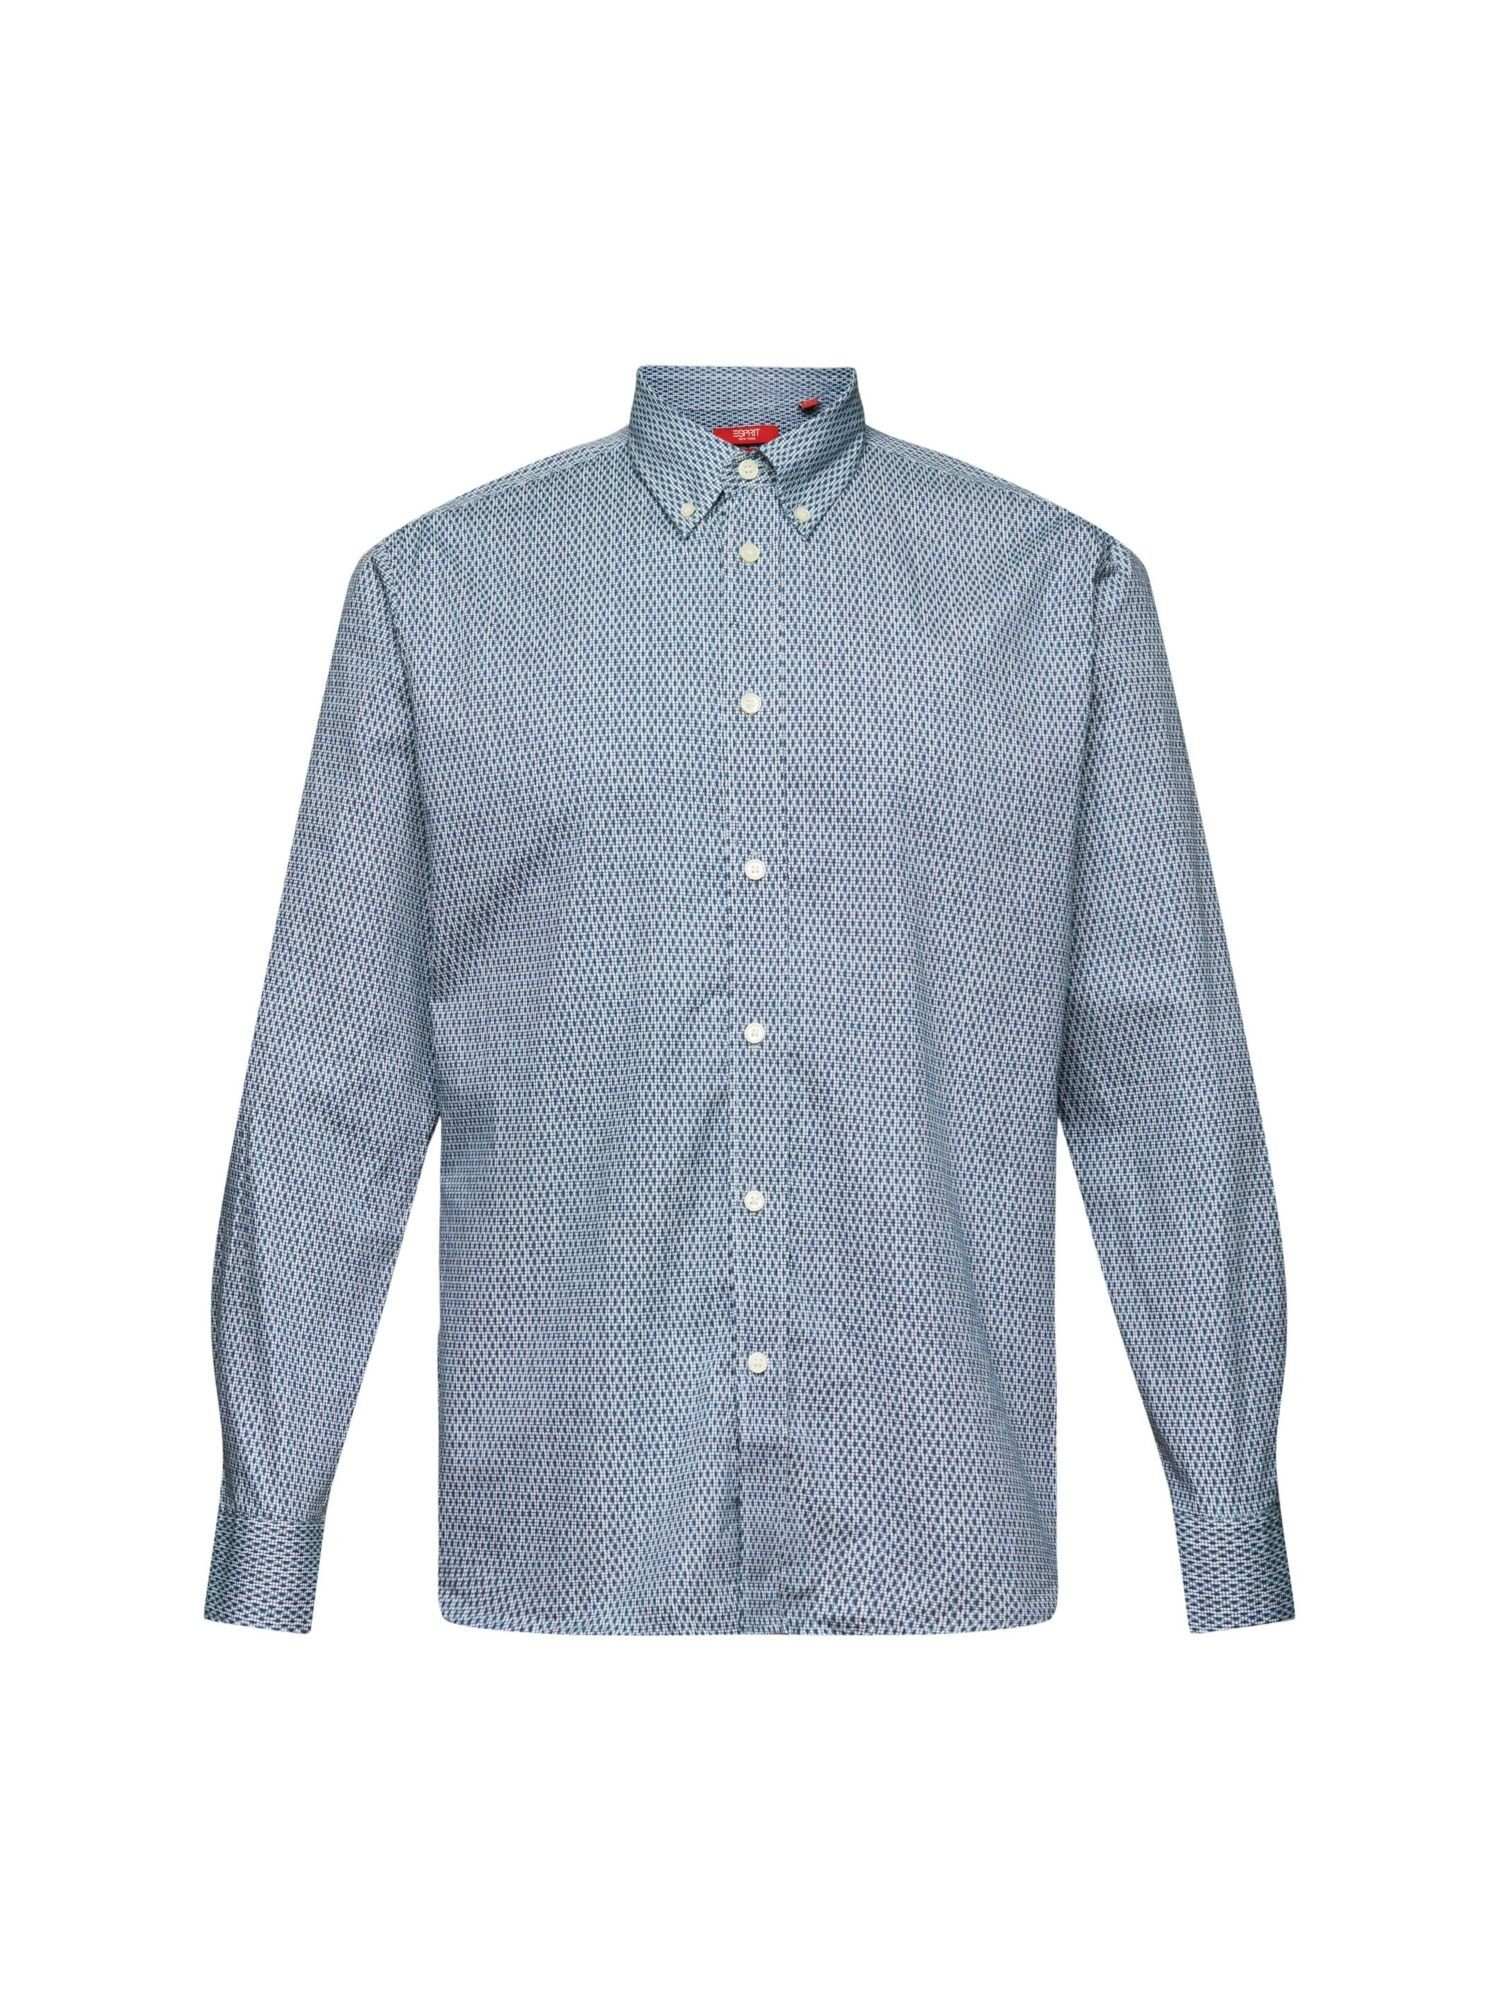 Esprit Collection Businesshemd Baumwollhemd mit Print in bequemer Passform GREY BLUE